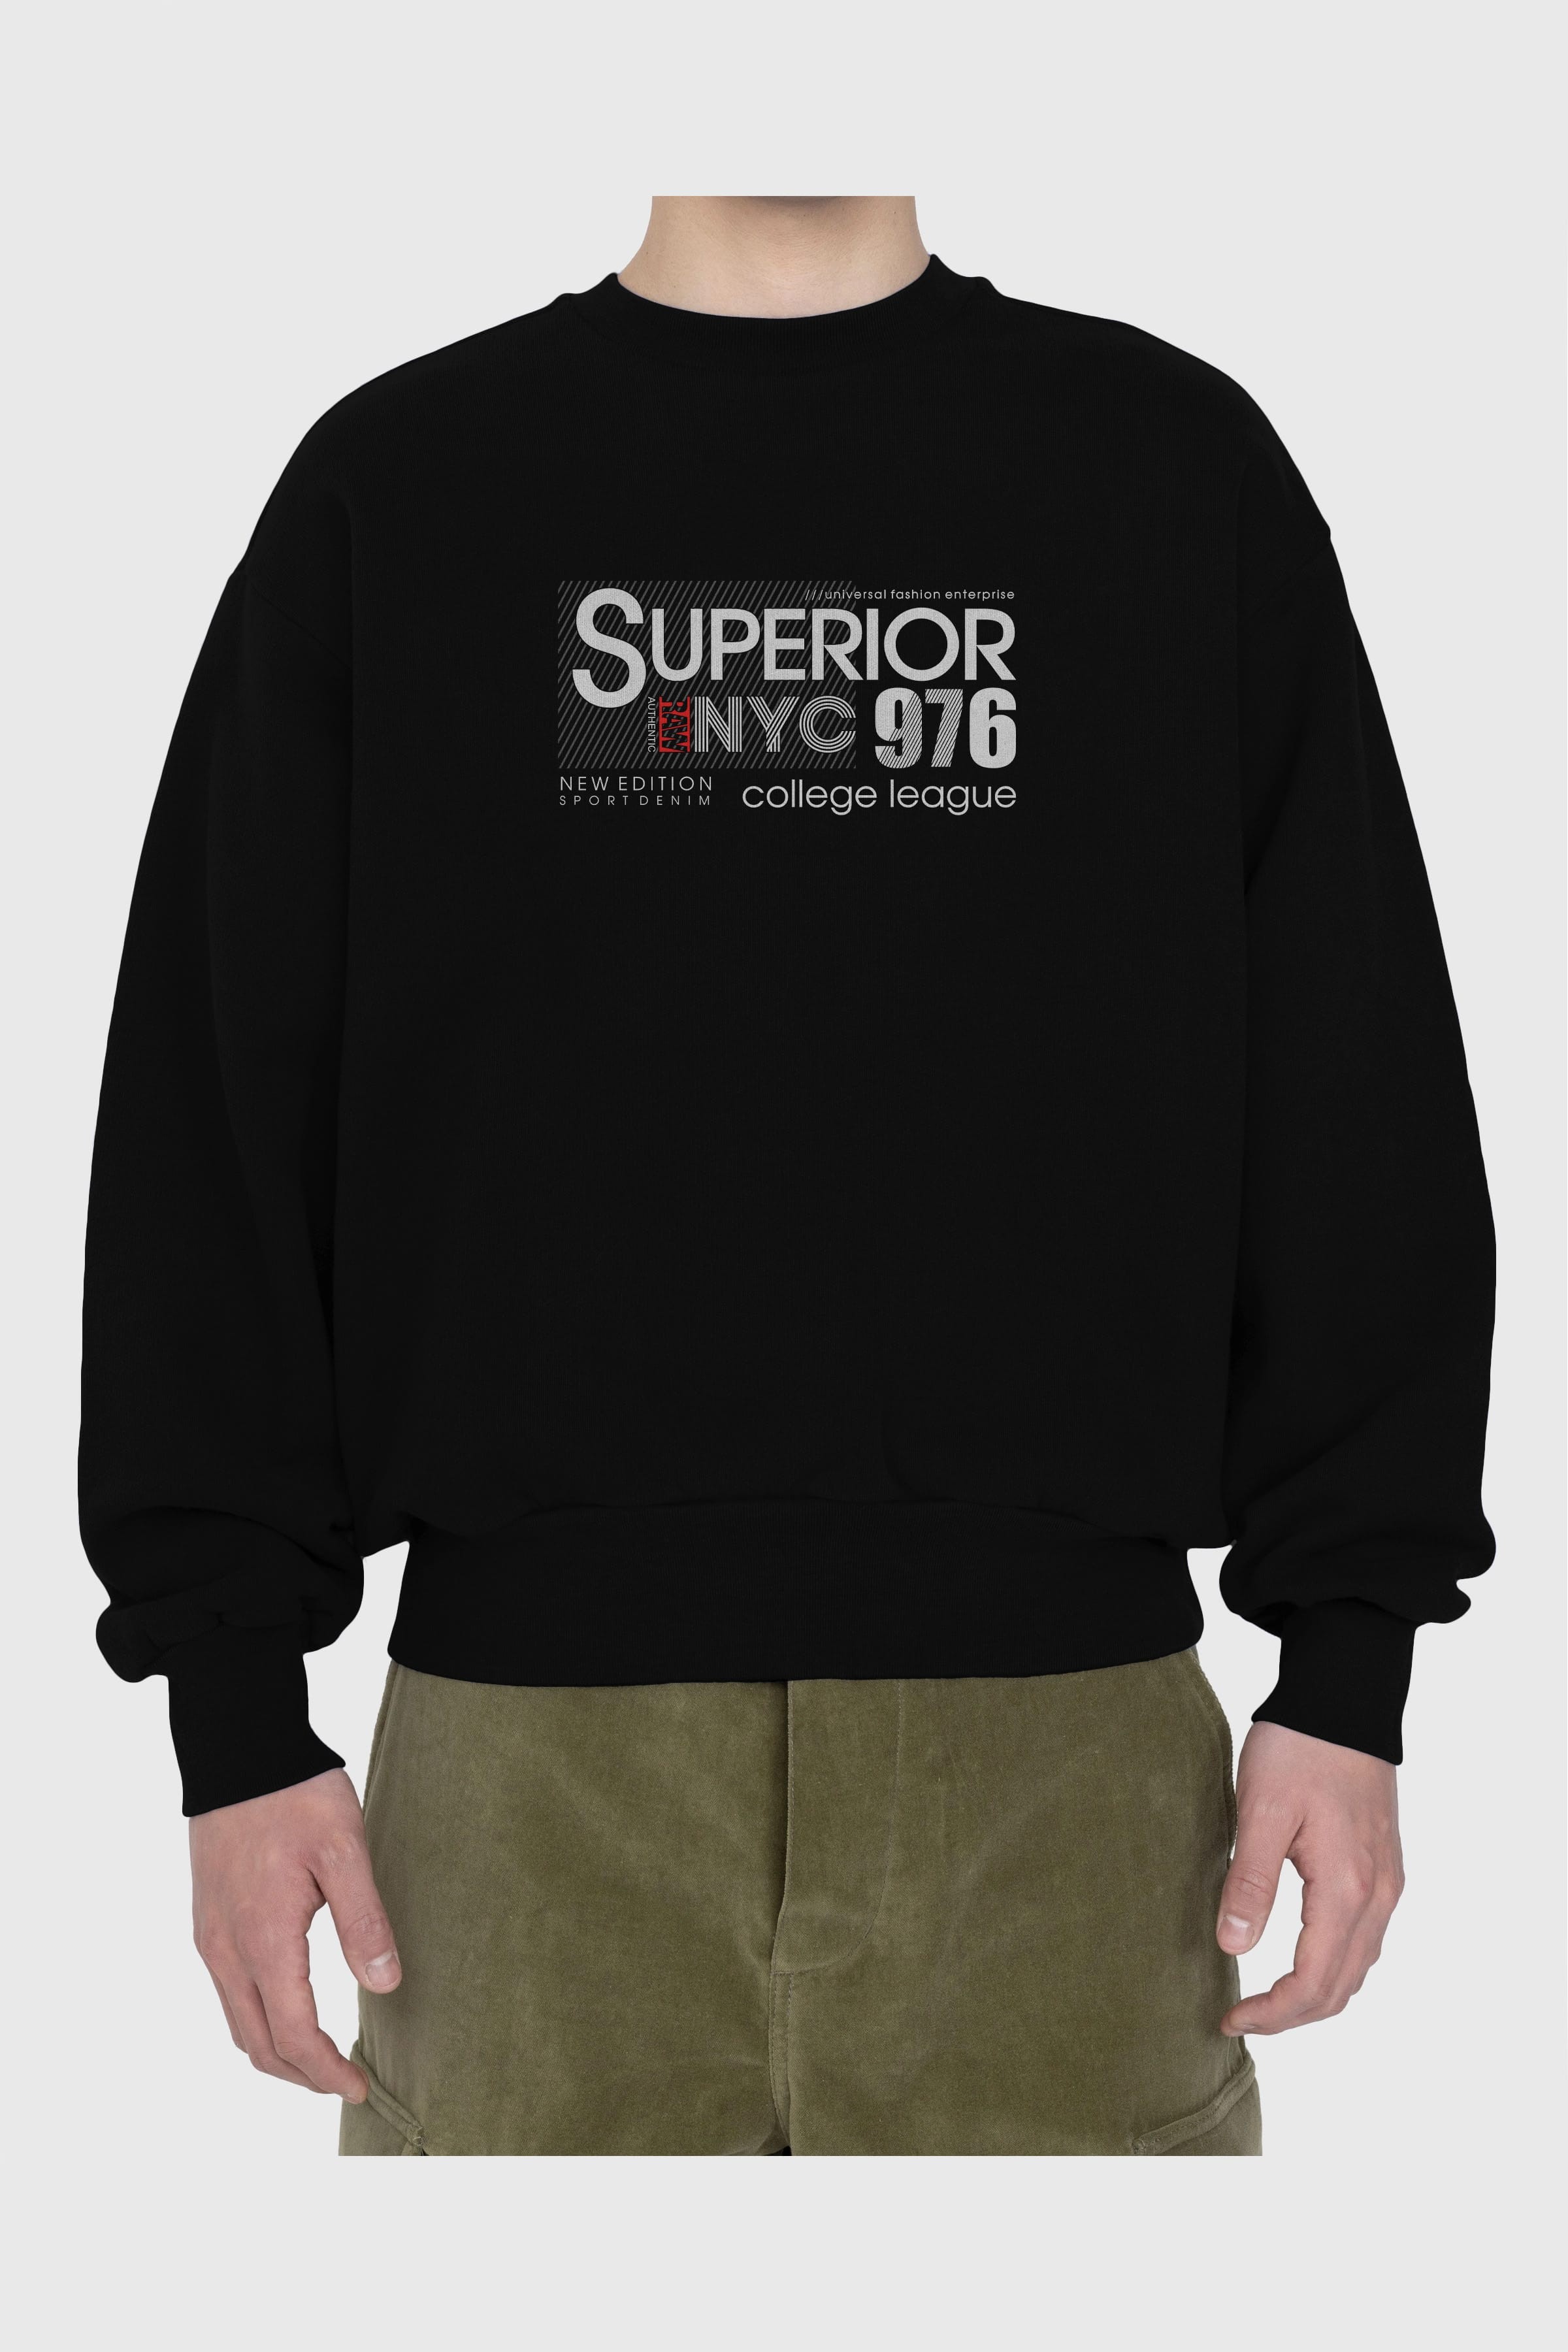 Superior 976 Ön Baskılı Oversize Sweatshirt Erkek Kadın Unisex